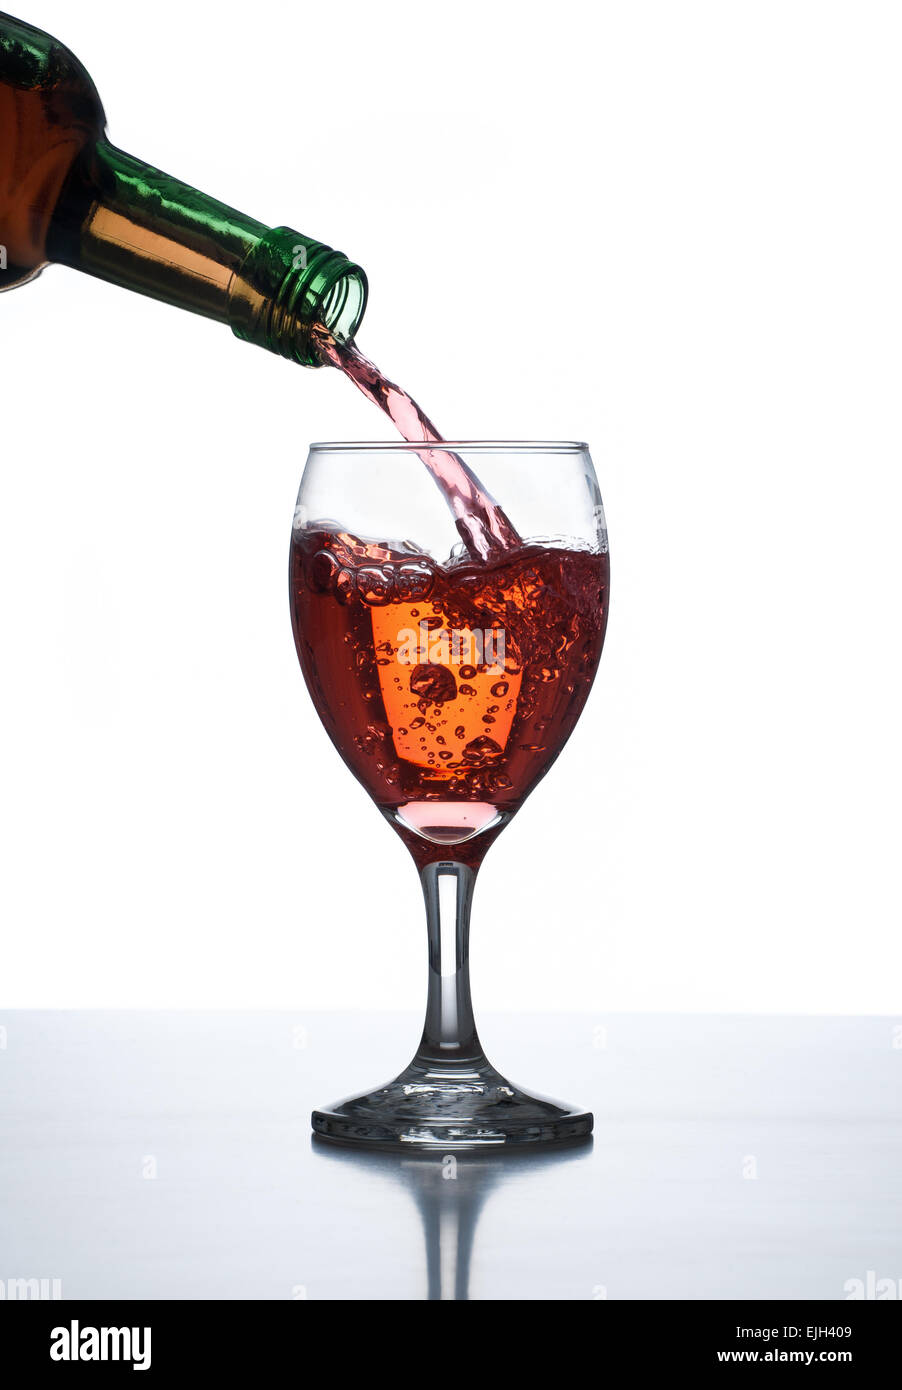 Verter el licor en vaso de vino de mesa reflectante con fondo blanco. Foto de stock